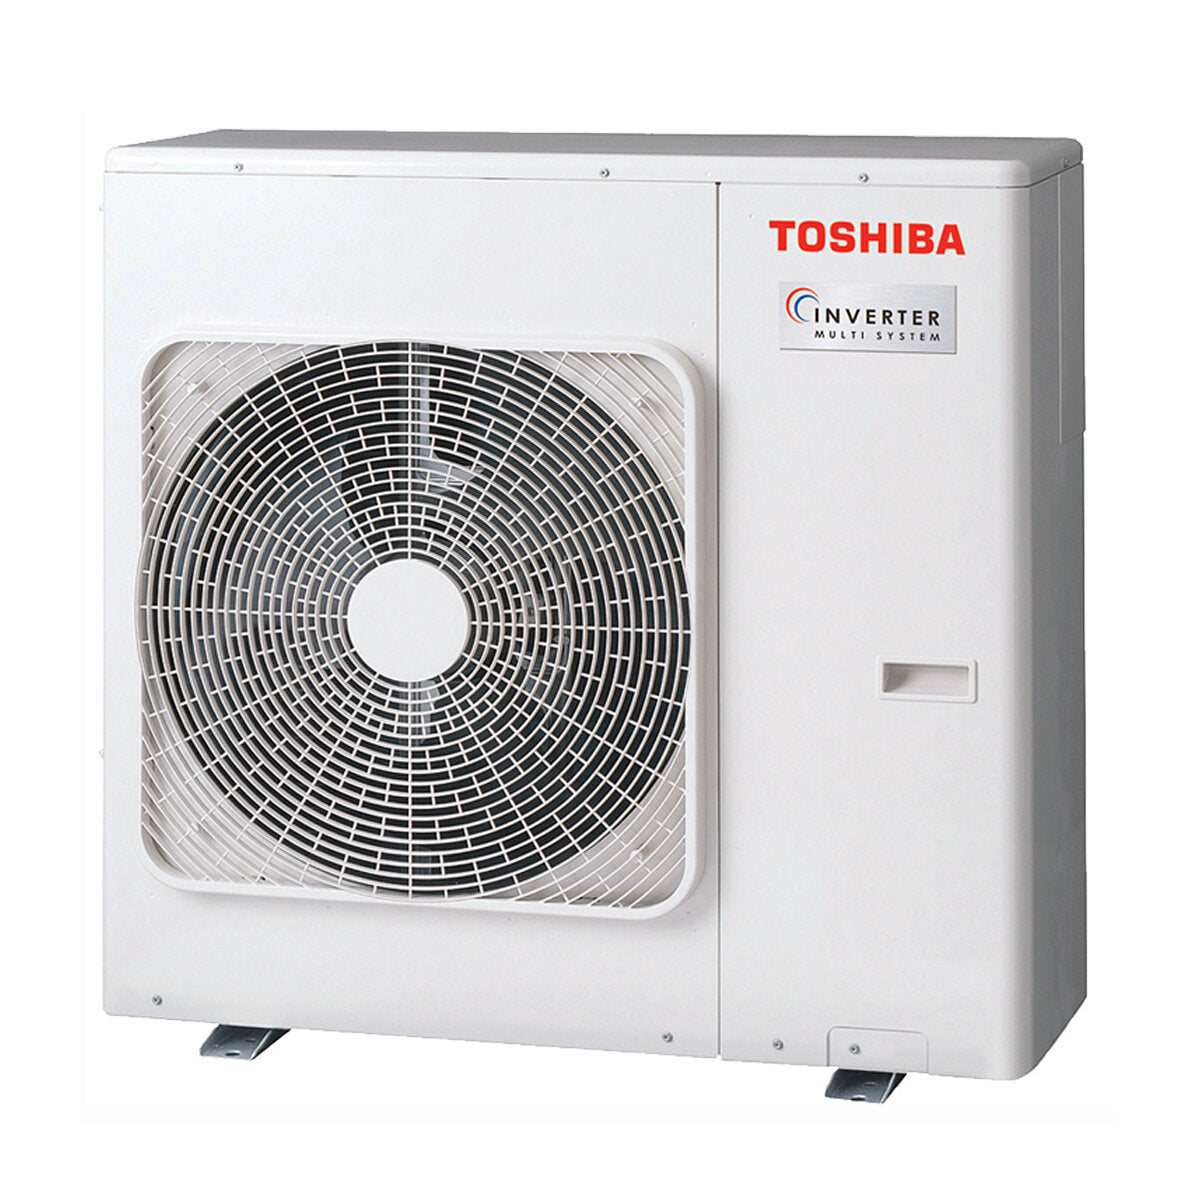 Toshiba Ductable Air Conditioner U2 penta split 9000 + 9000 + 9000 + 9000 + 9000 BTU inverter A++ unité extérieure 10,0 kW